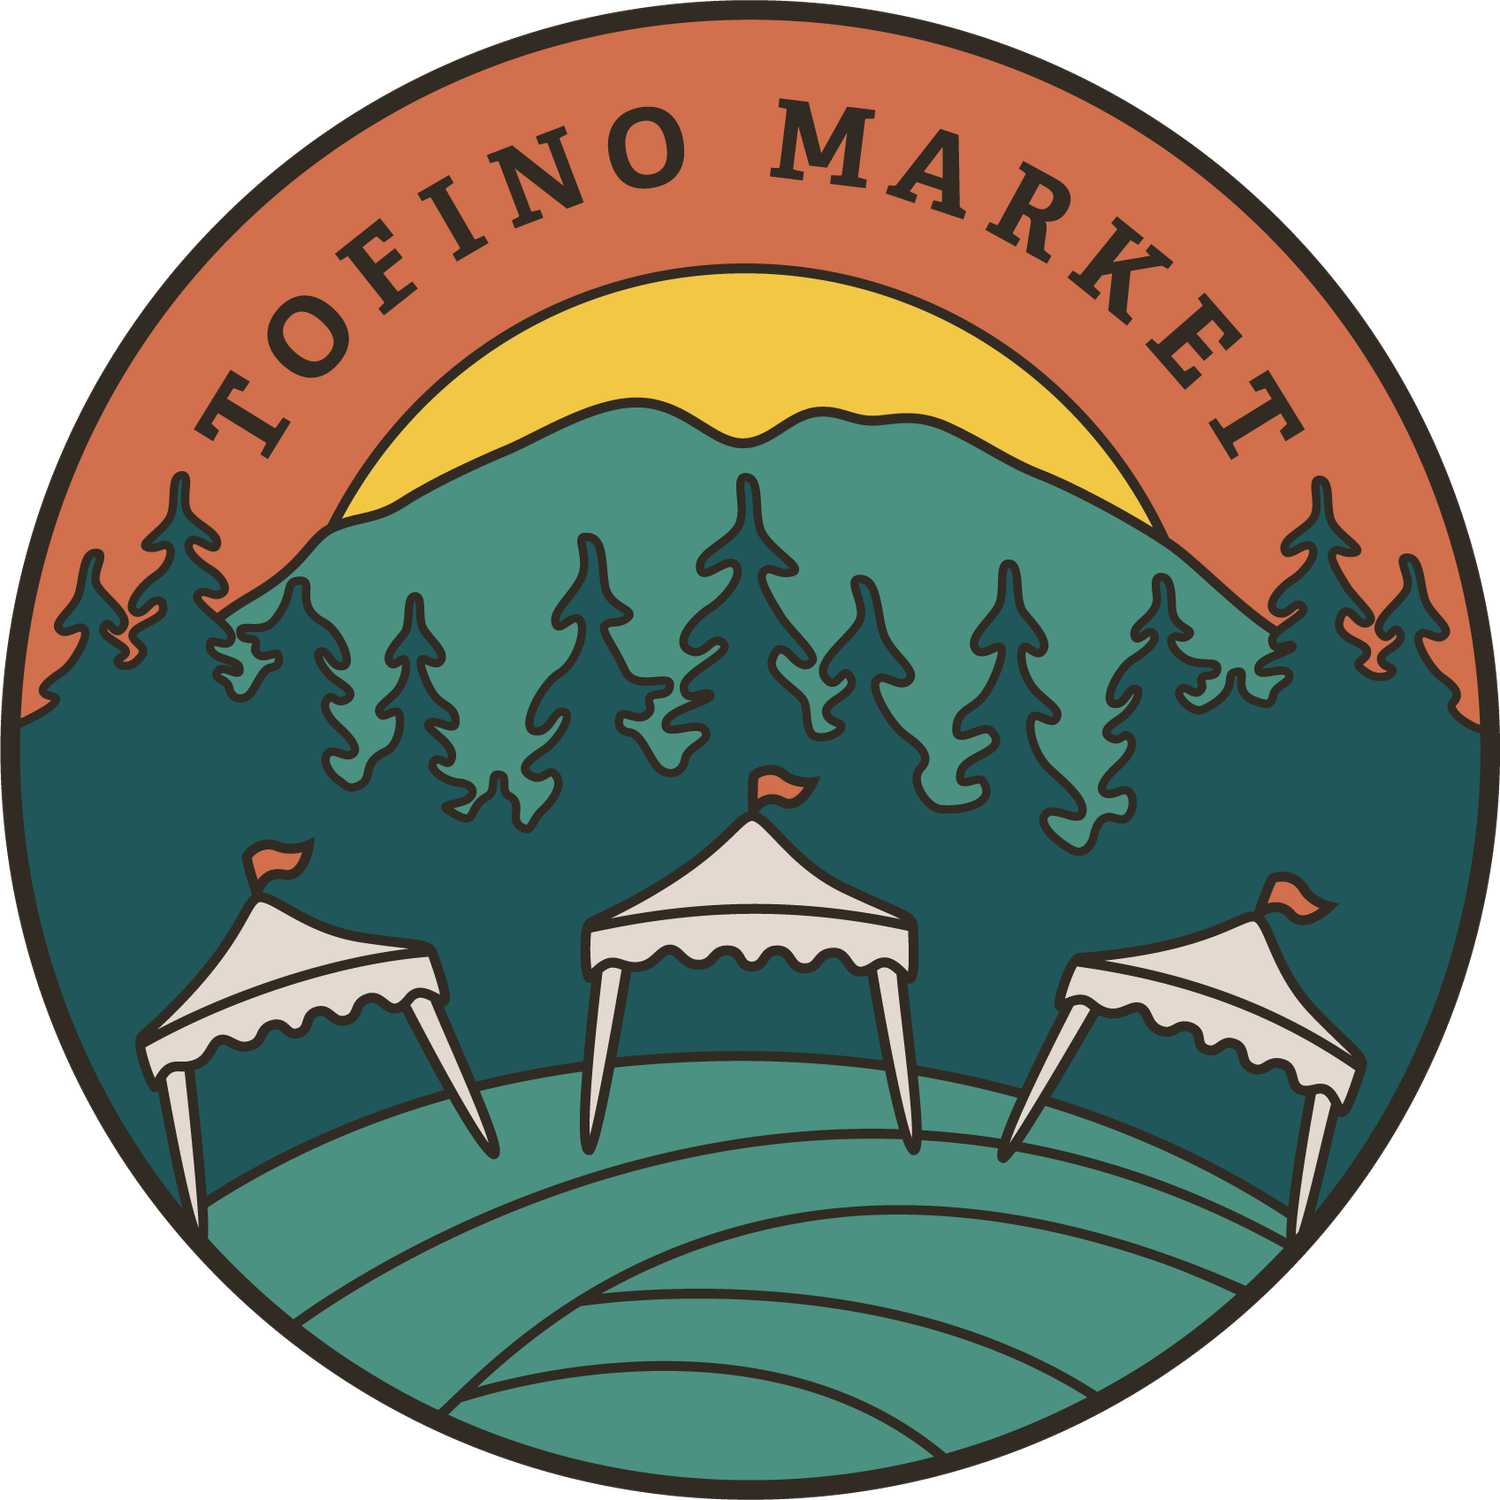 tofino market